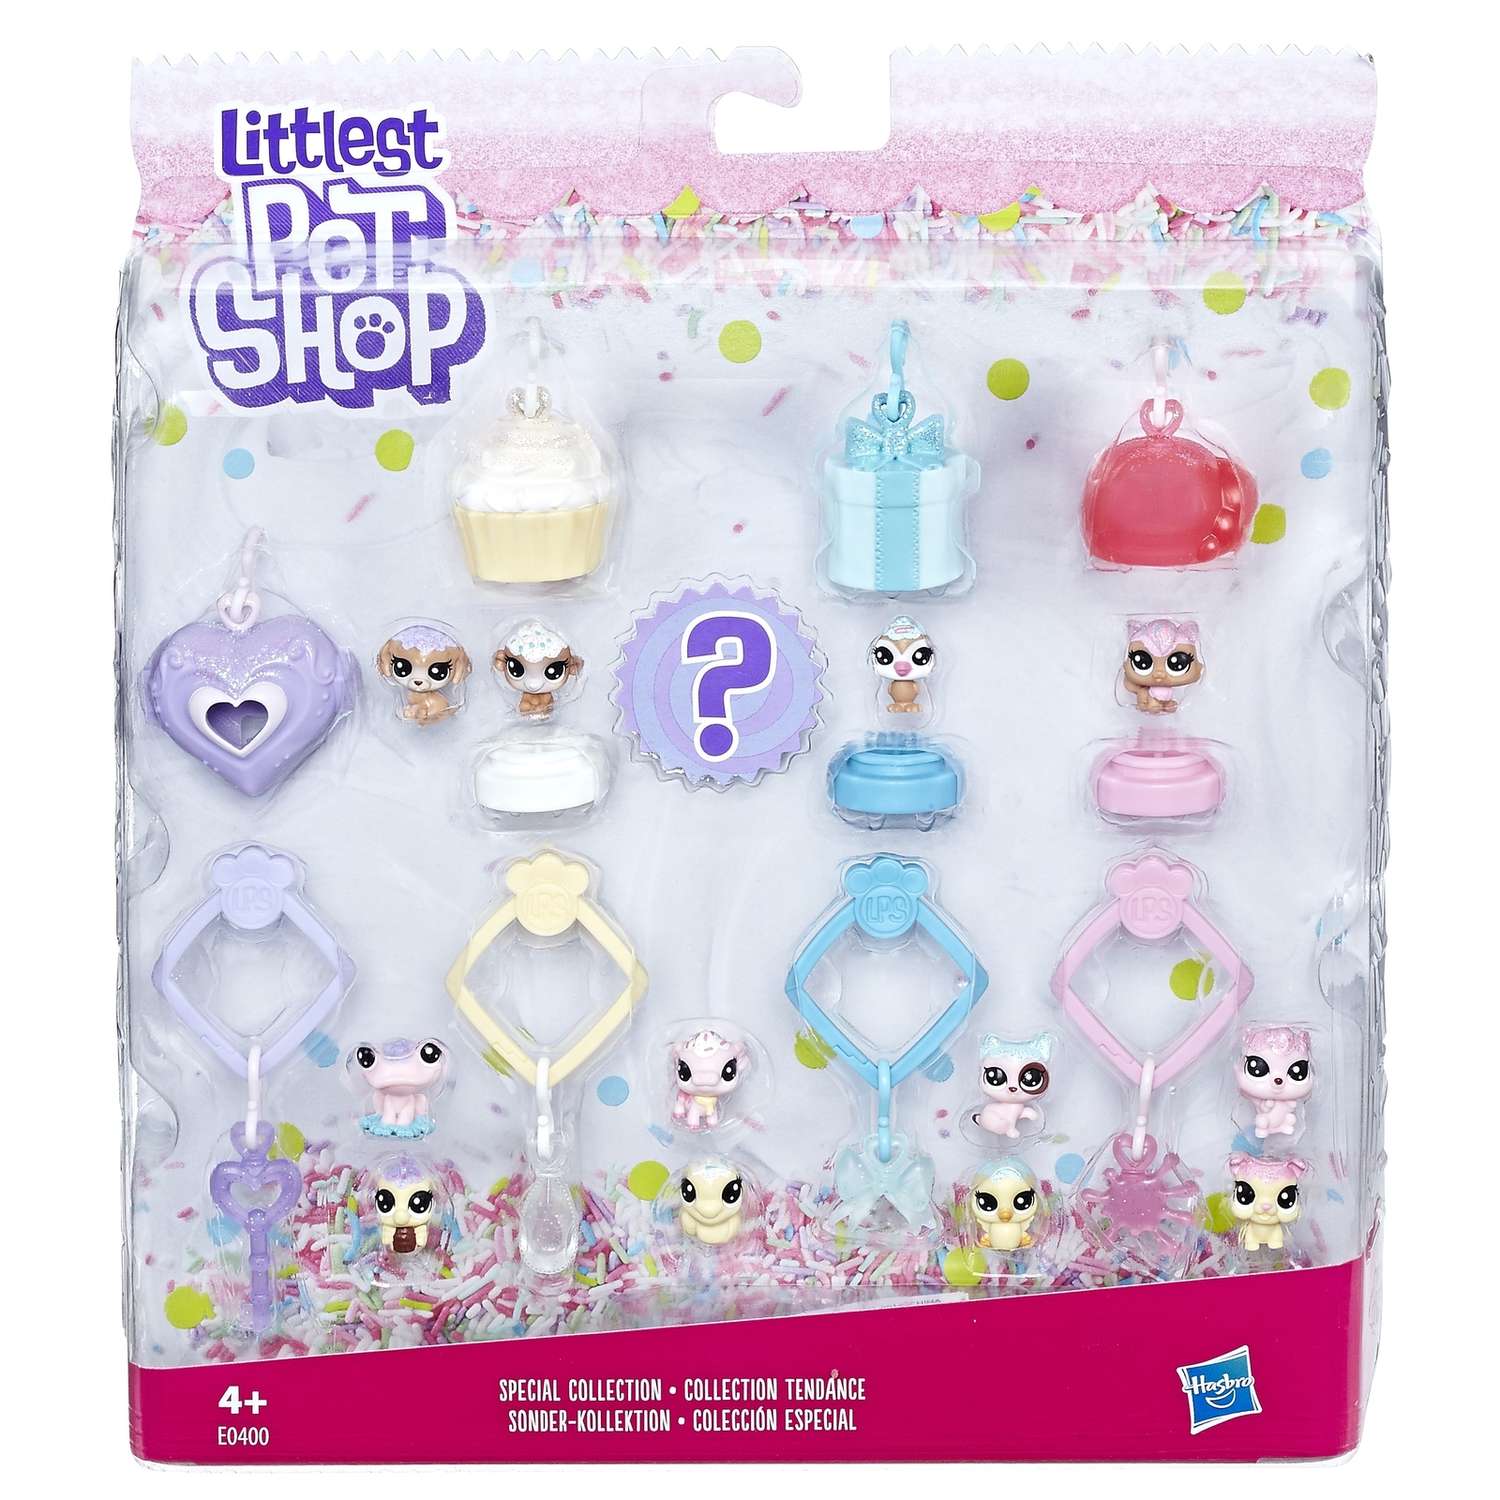 Набор игрушек Littlest Pet Shop 13 зефирных Петов - фото 6